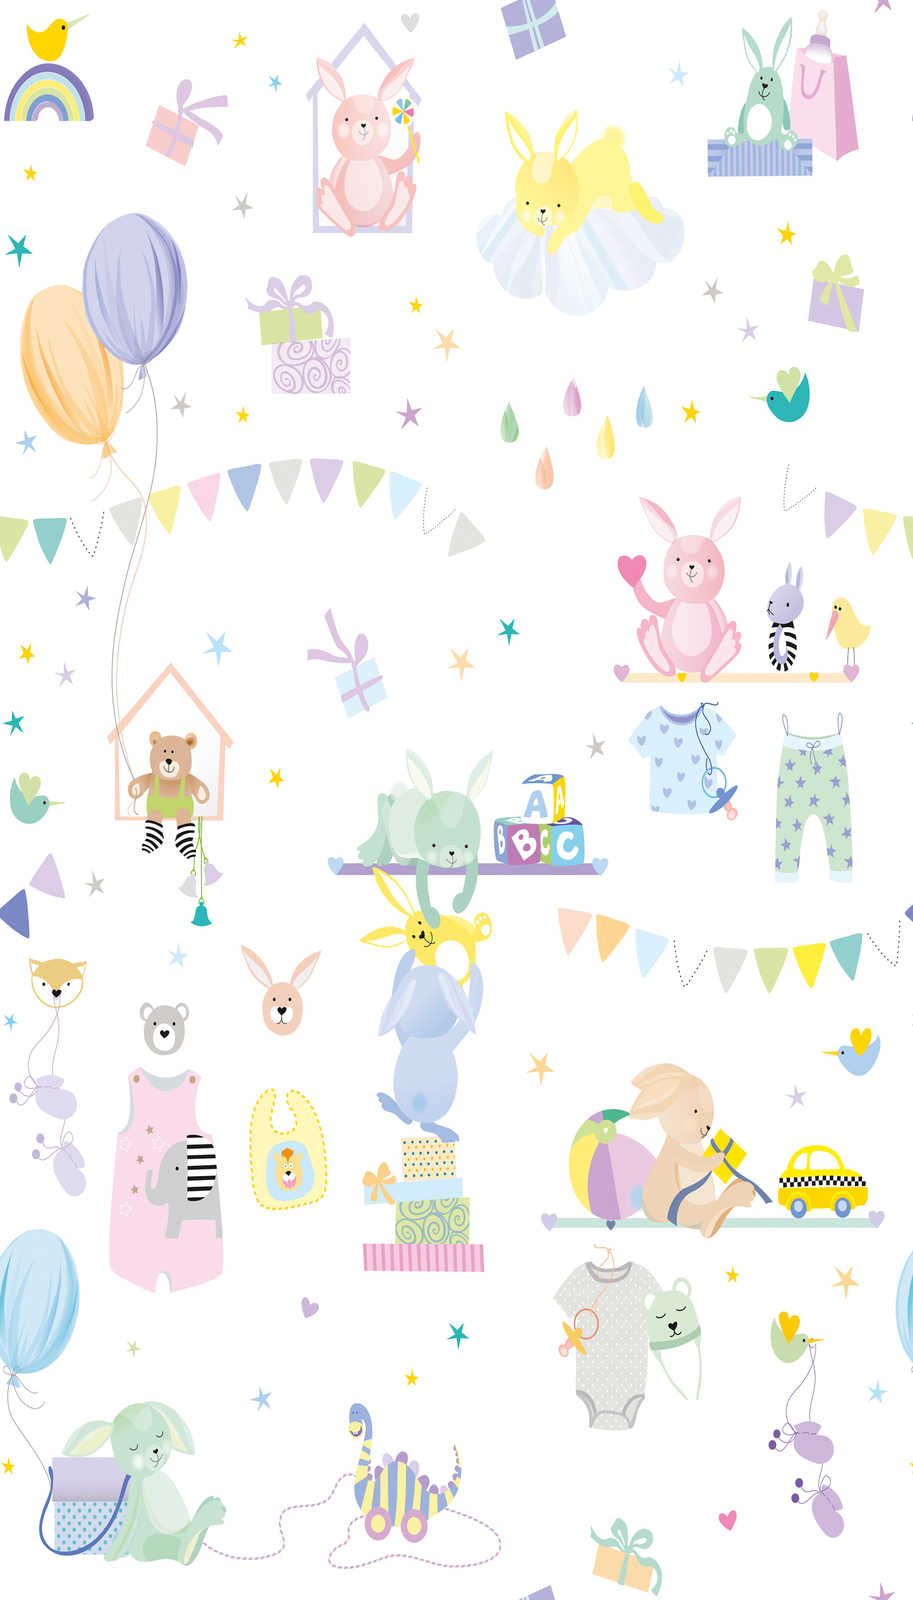             Onderlaag behang met kindermotief met dieren in pastelkleuren - kleurrijk, paars, roze
        